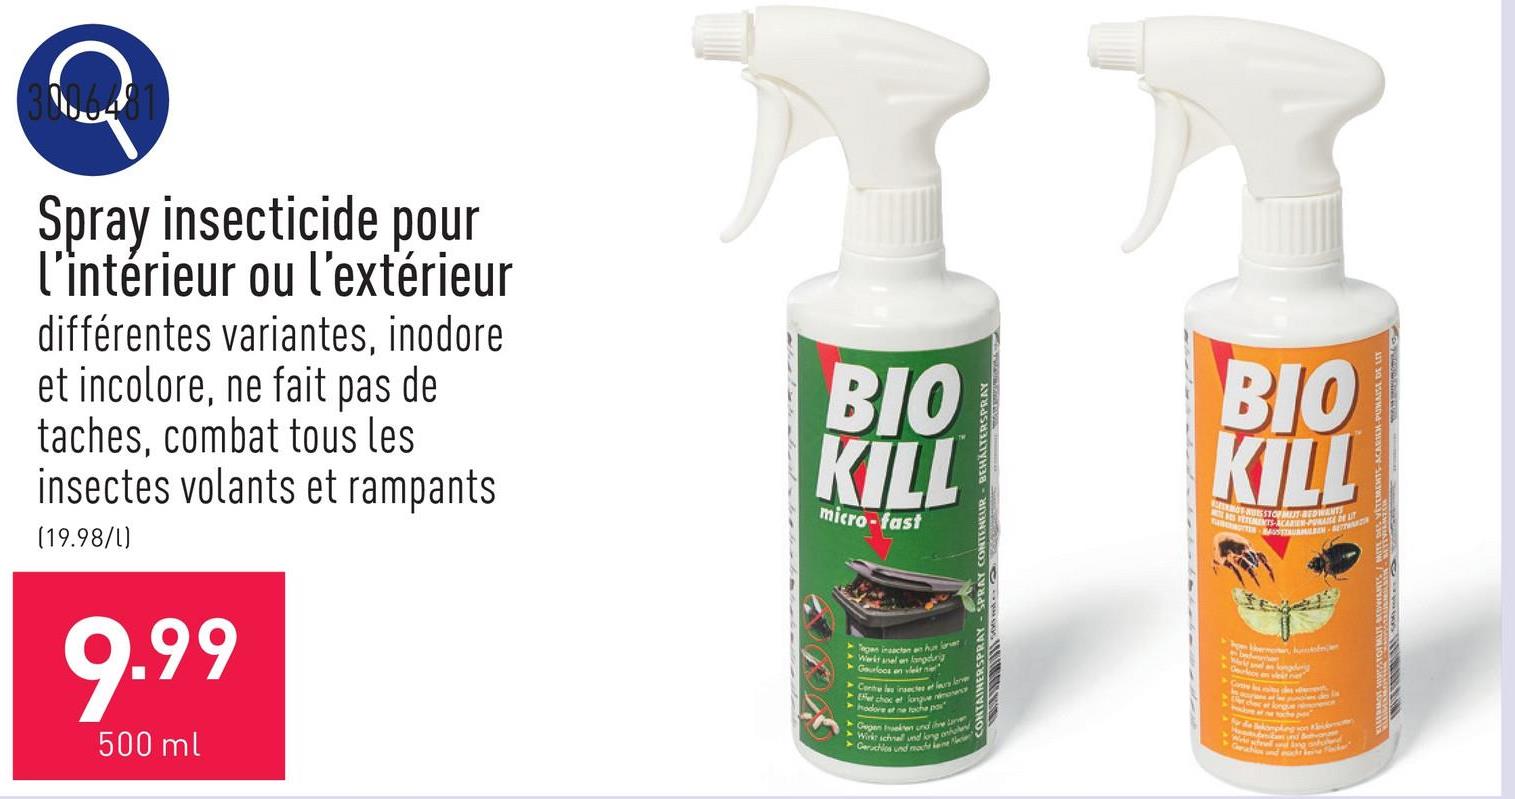 Spray insecticide pour l’intérieur ou l’extérieur différentes variantes, inodore et incolore, ne fait pas de taches, combat tous les insectes volants et rampants